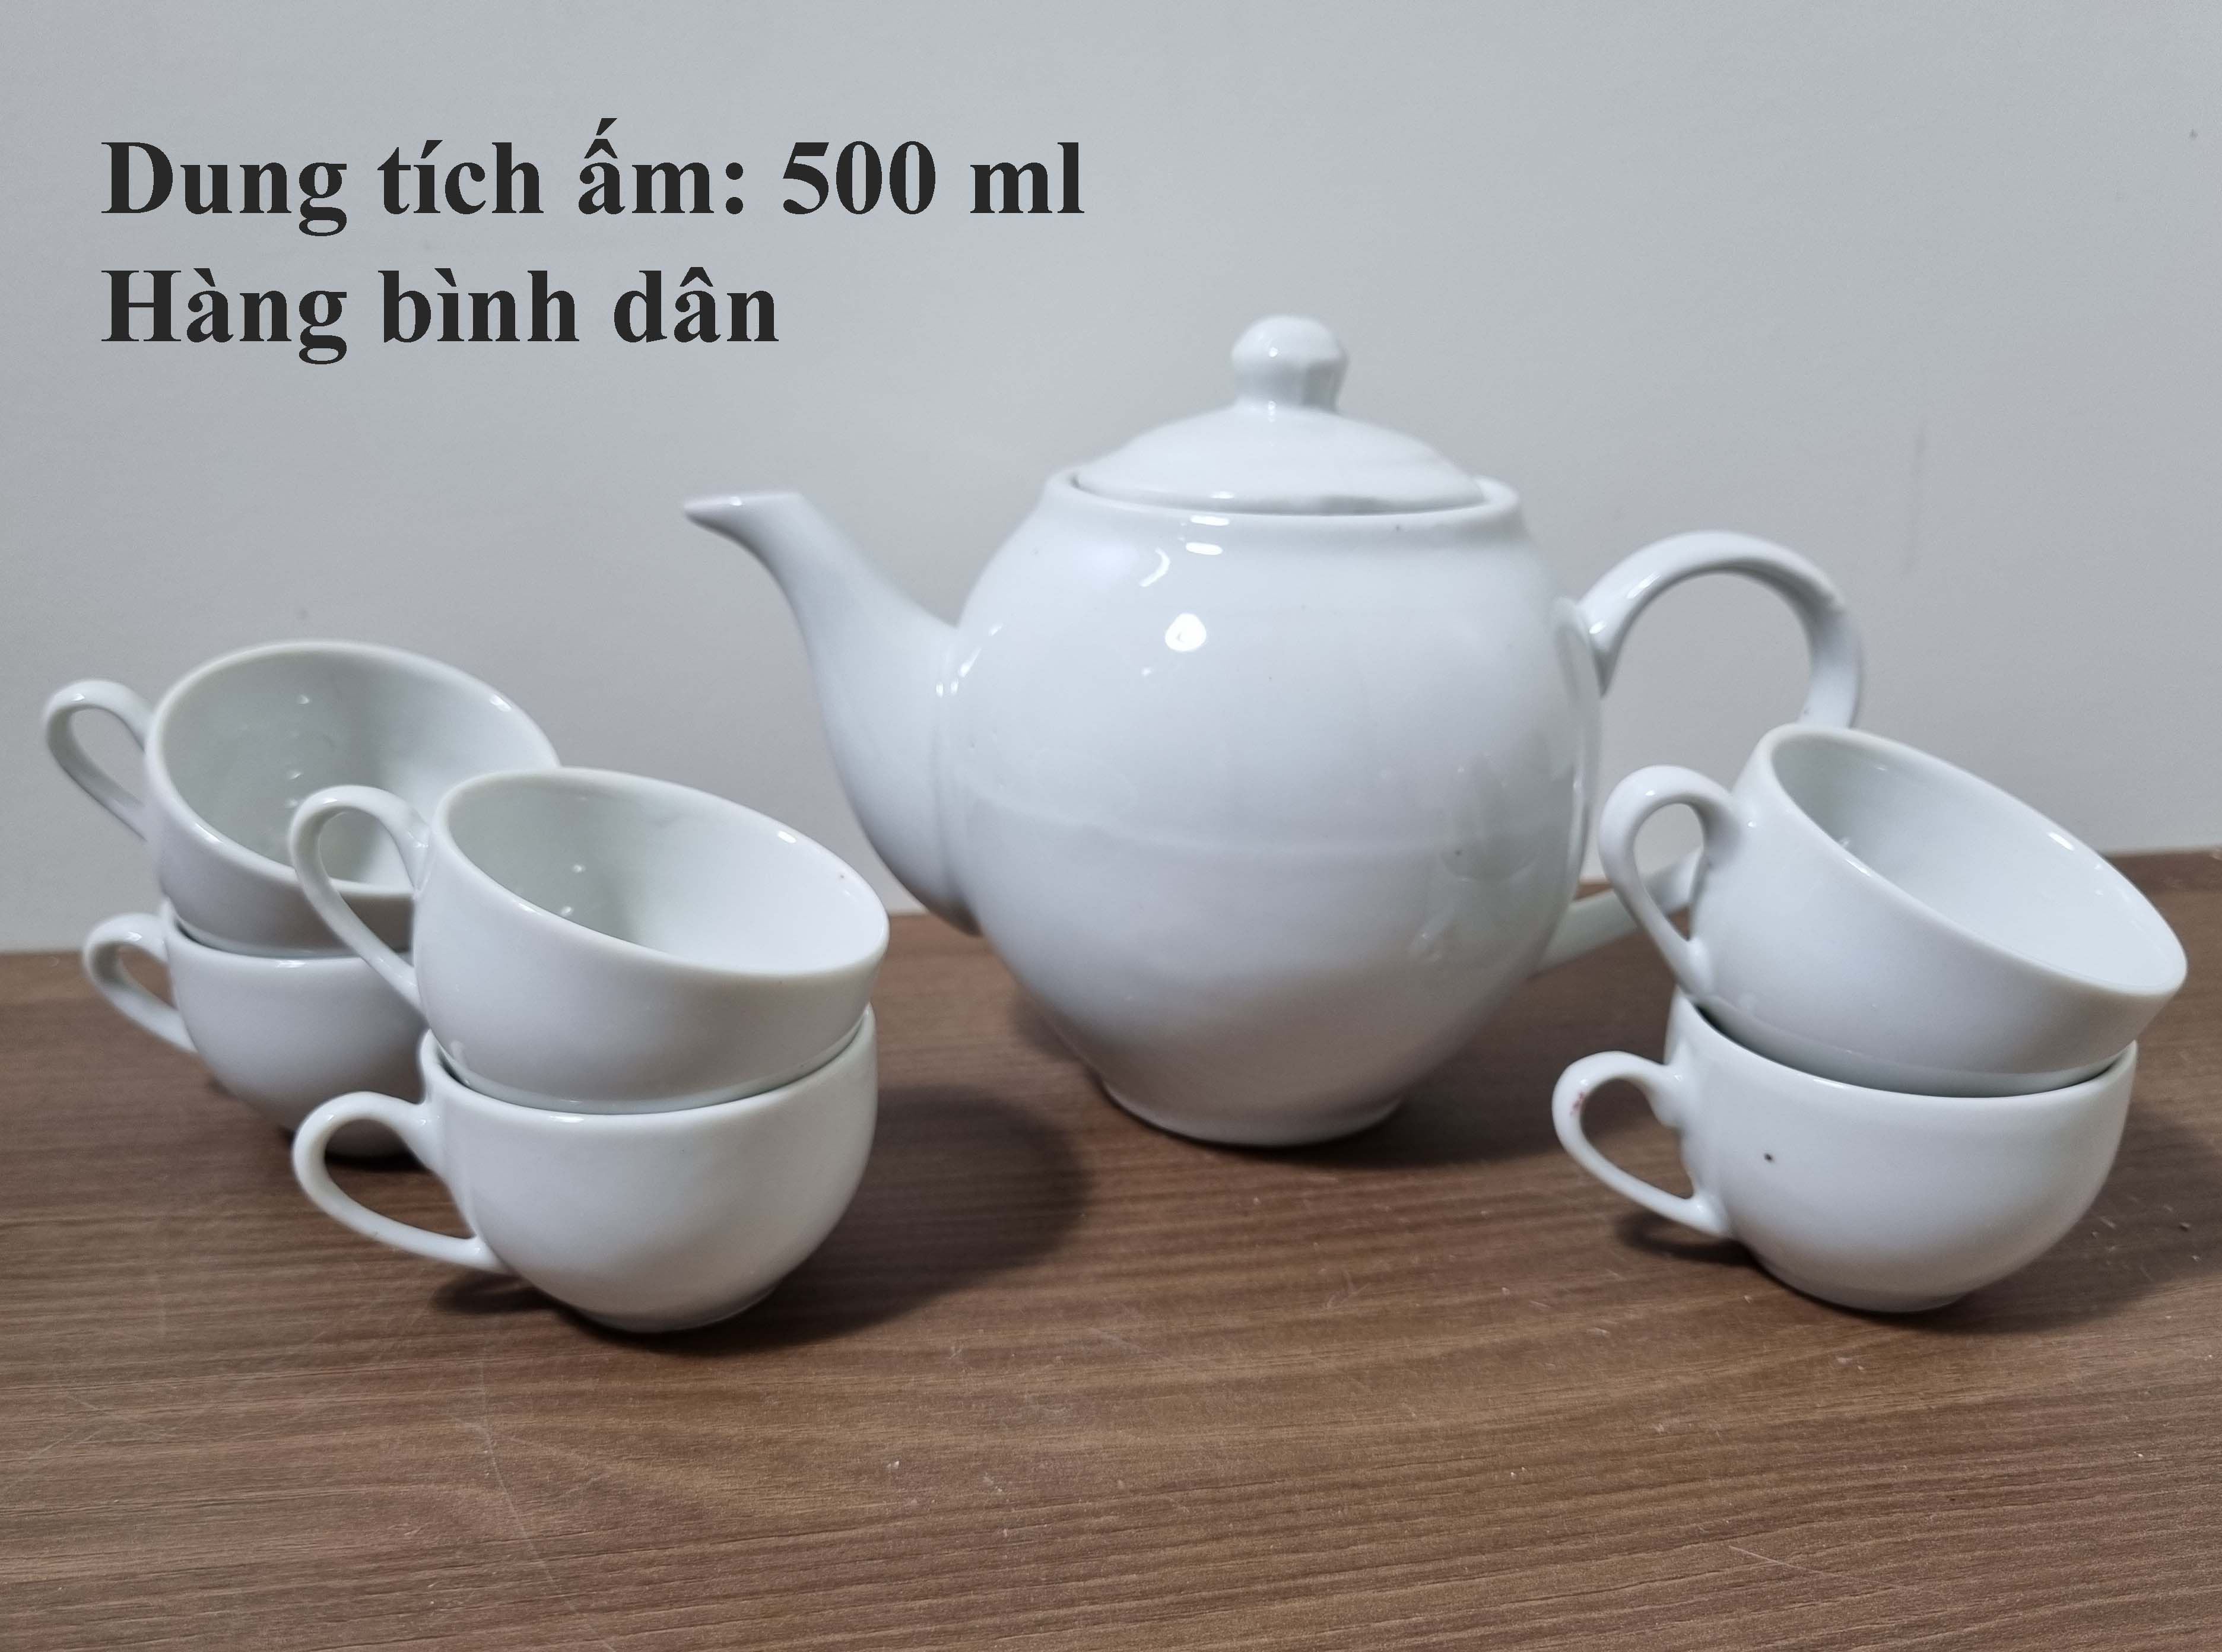 Bộ trà/bộ ấm chén trắng, hàng bình dân, không đĩa kê, dung tích 500 ml